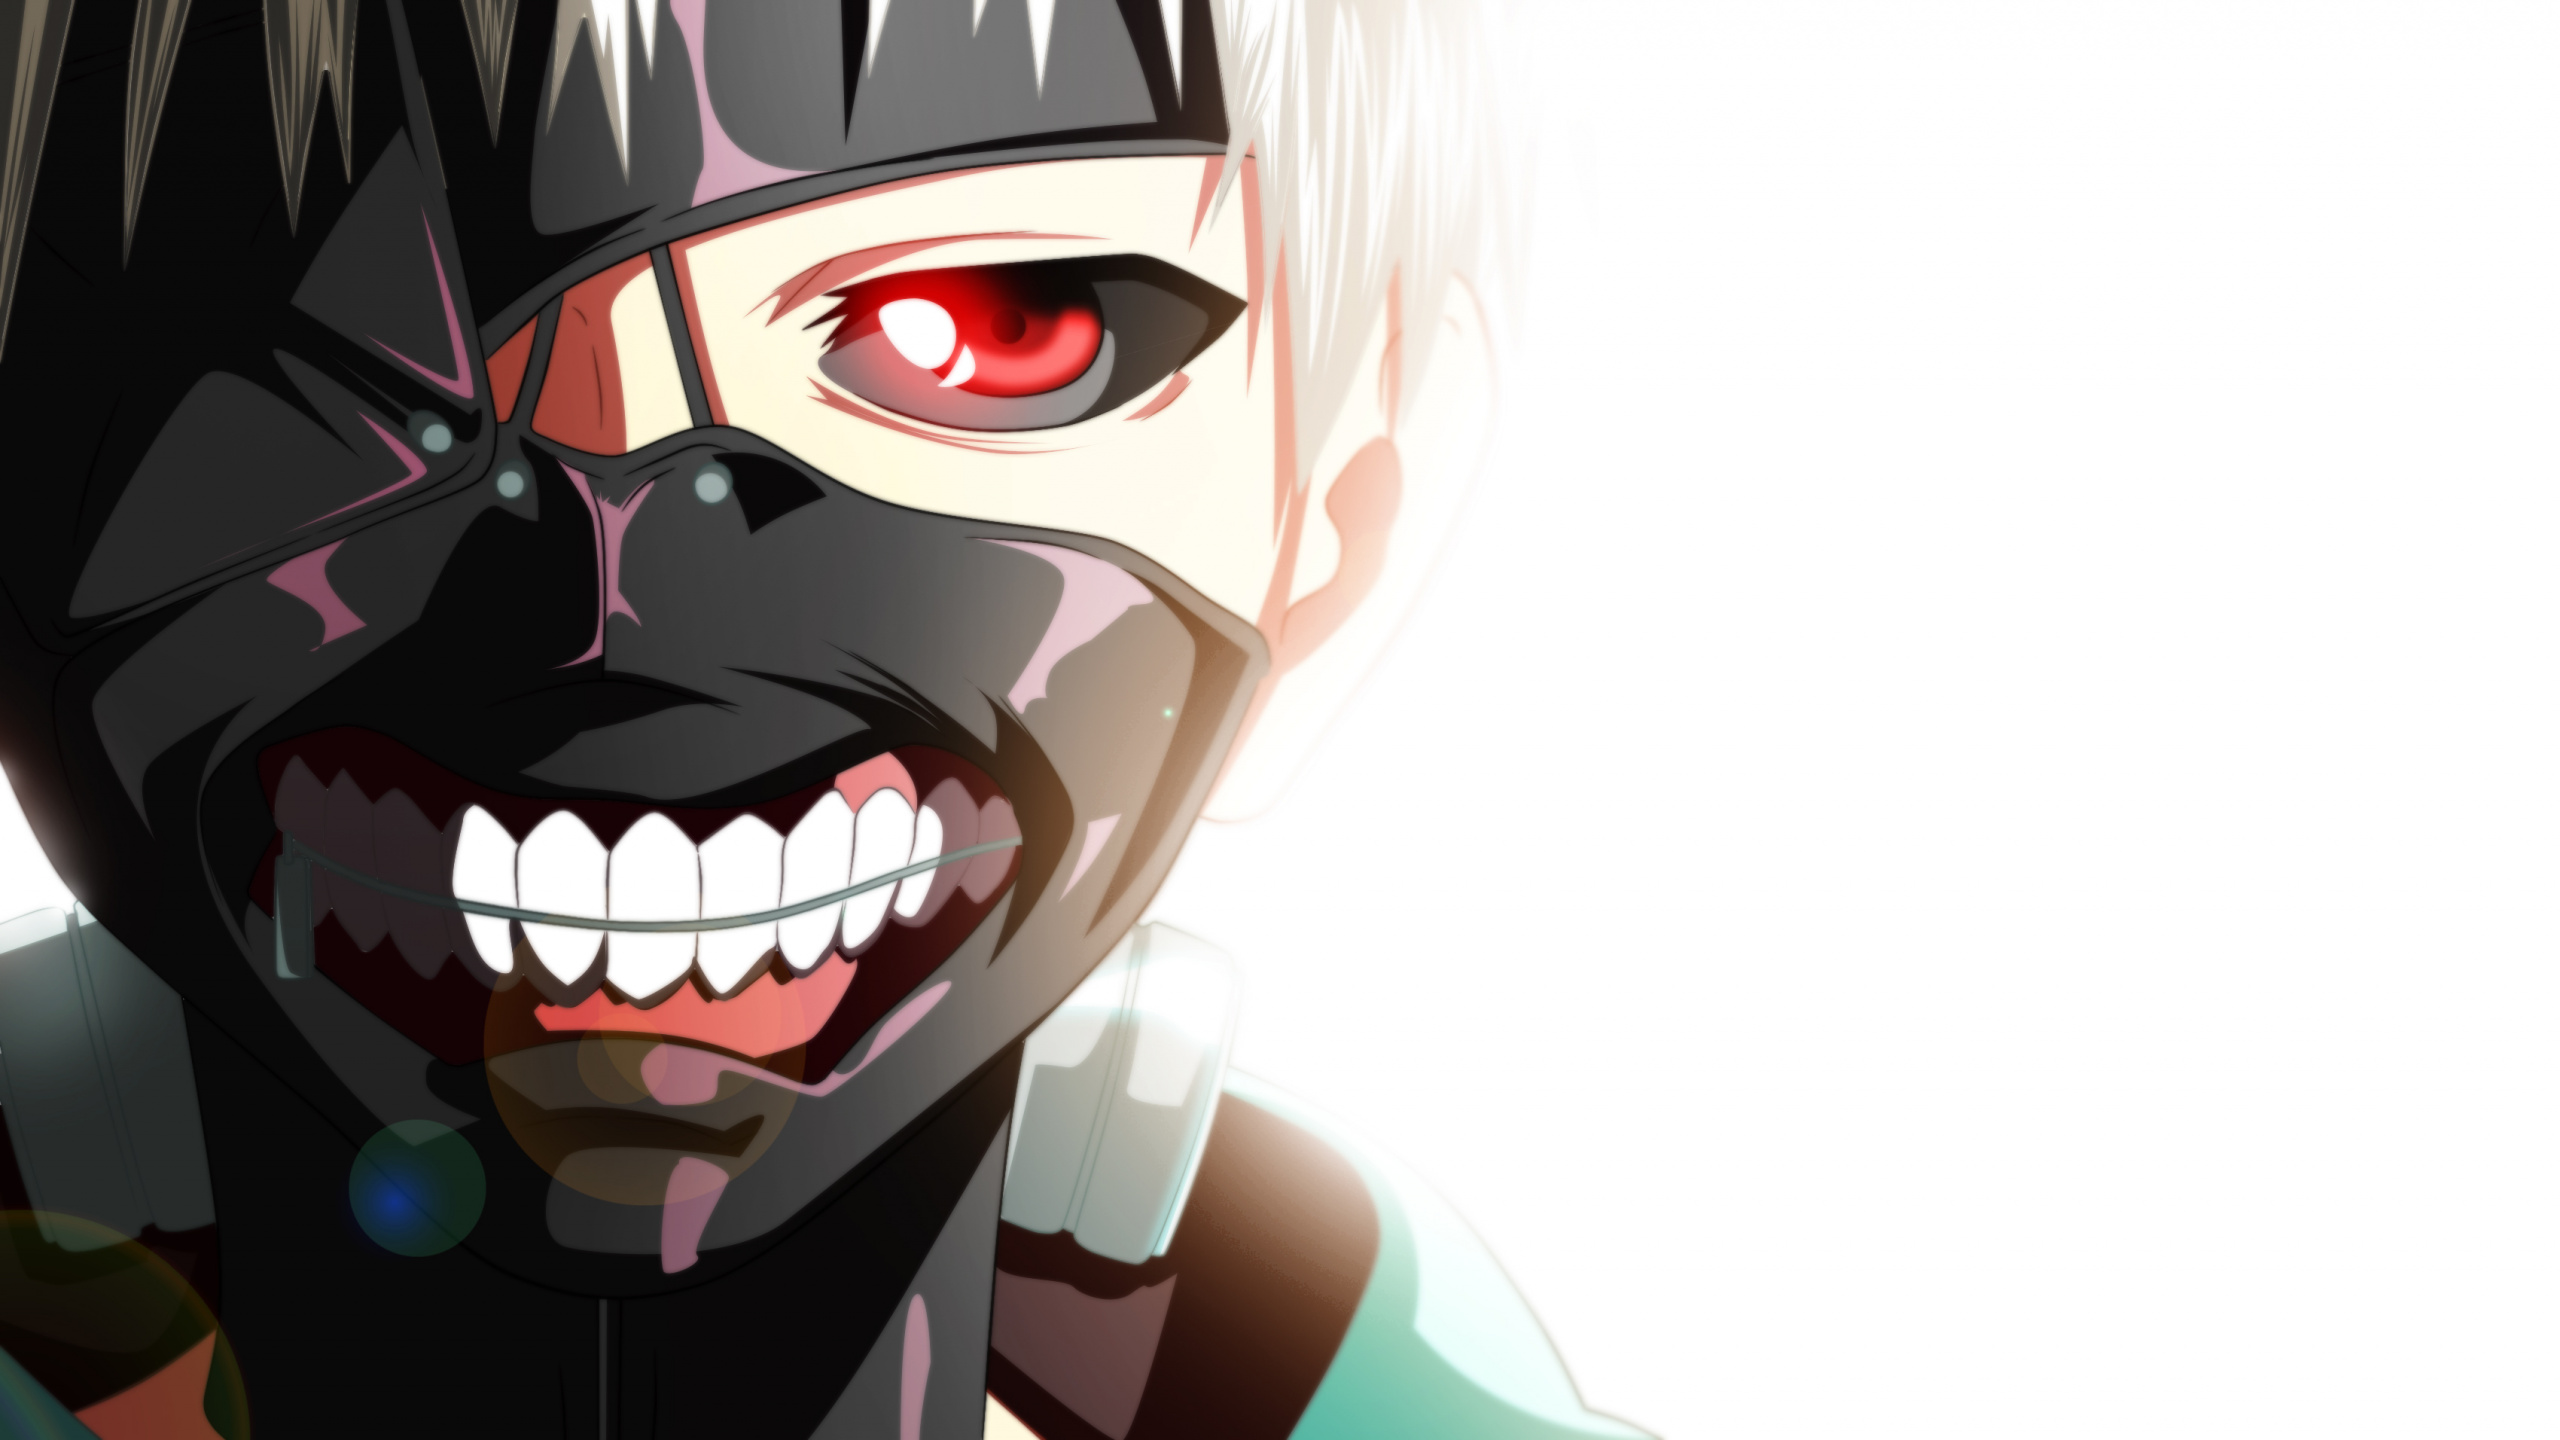 Personaje de Anime Masculino de Pelo Negro. Wallpaper in 2560x1440 Resolution